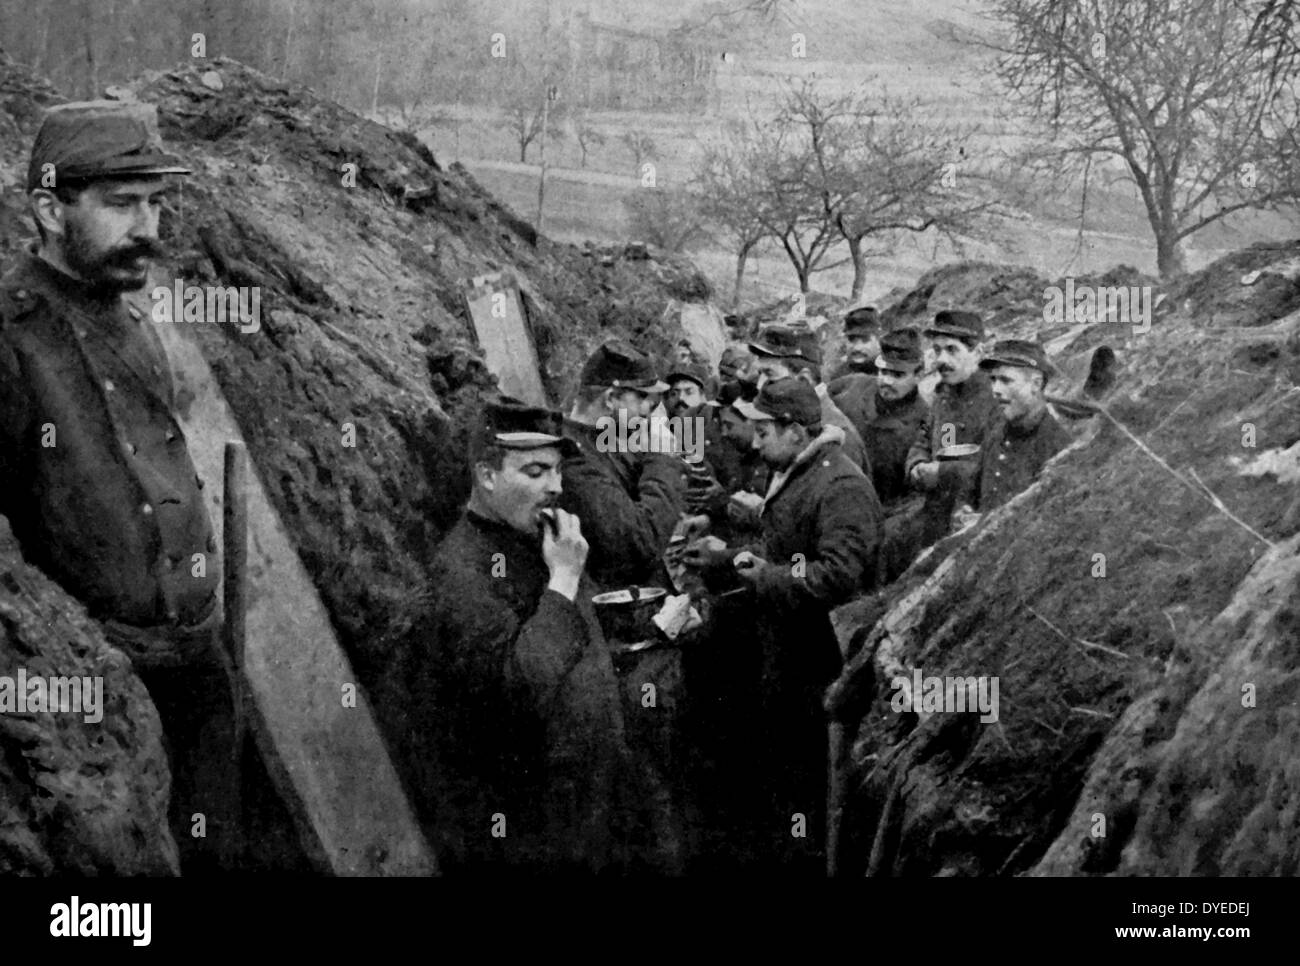 Soldats français sont vu manger tout en s'accroupissant dans les tranchées. Un soldat est vu la garde. Datée 1914 Banque D'Images